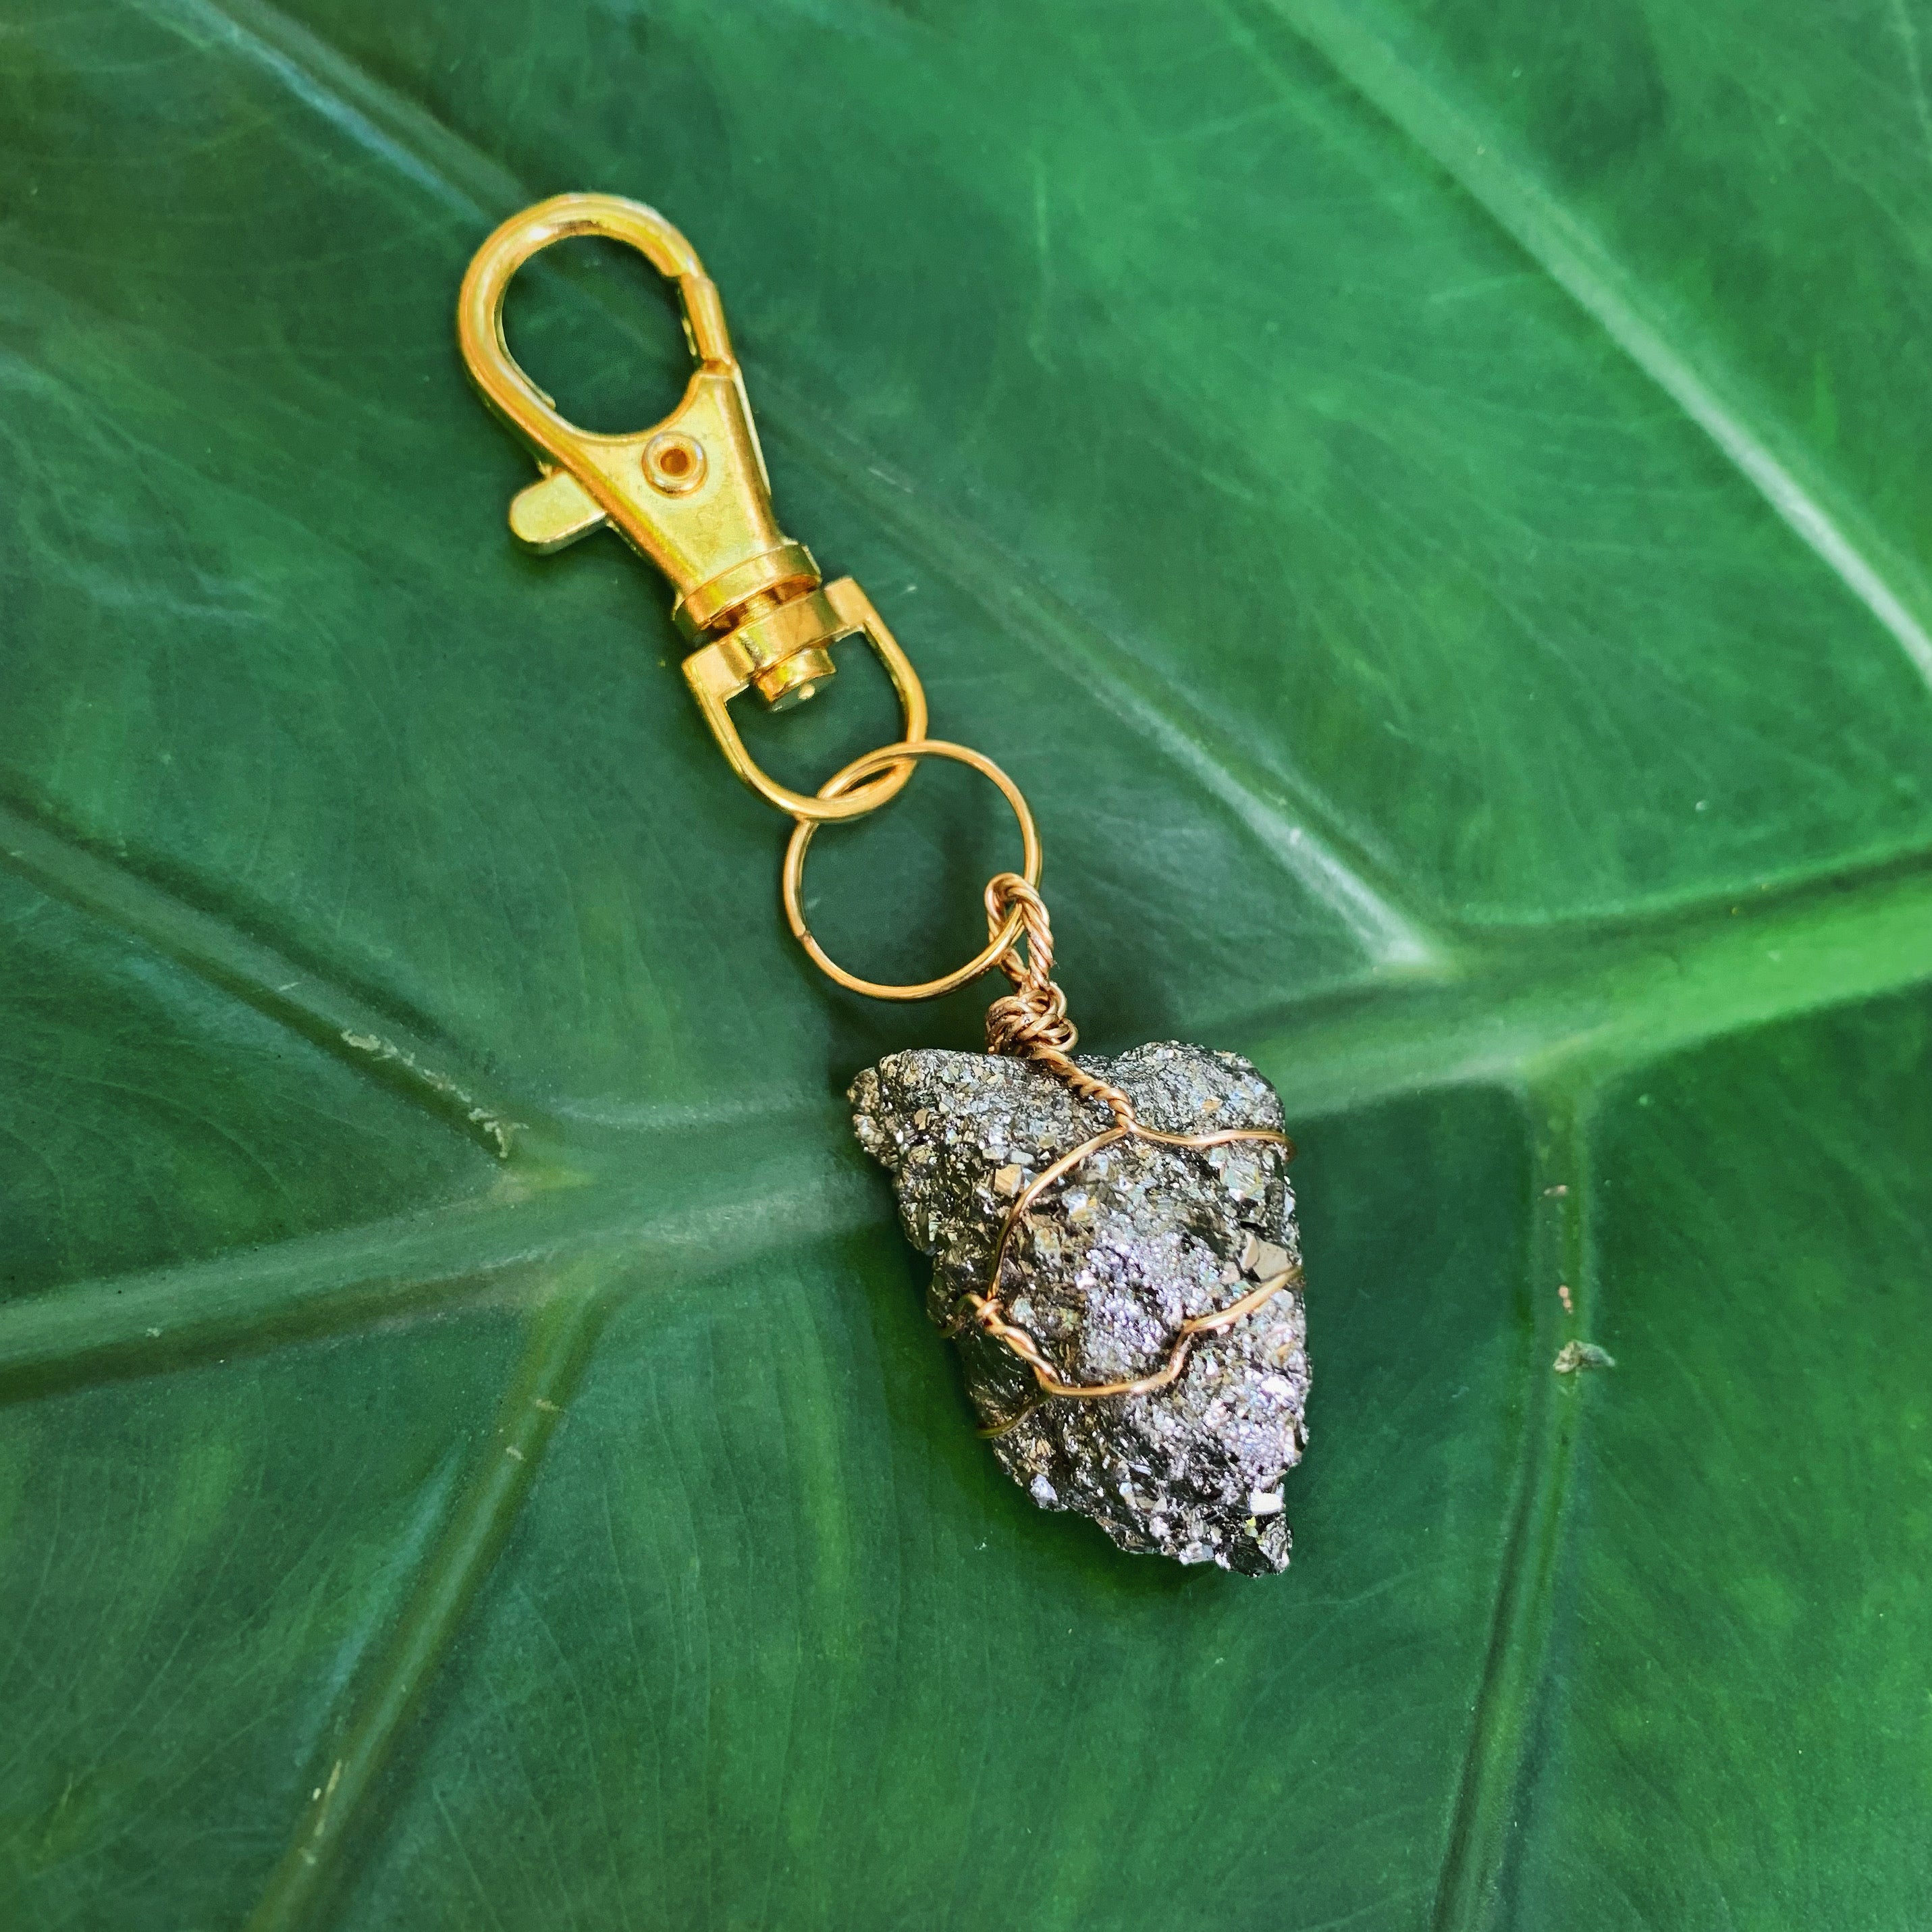 Pyrite in Golden Keychain